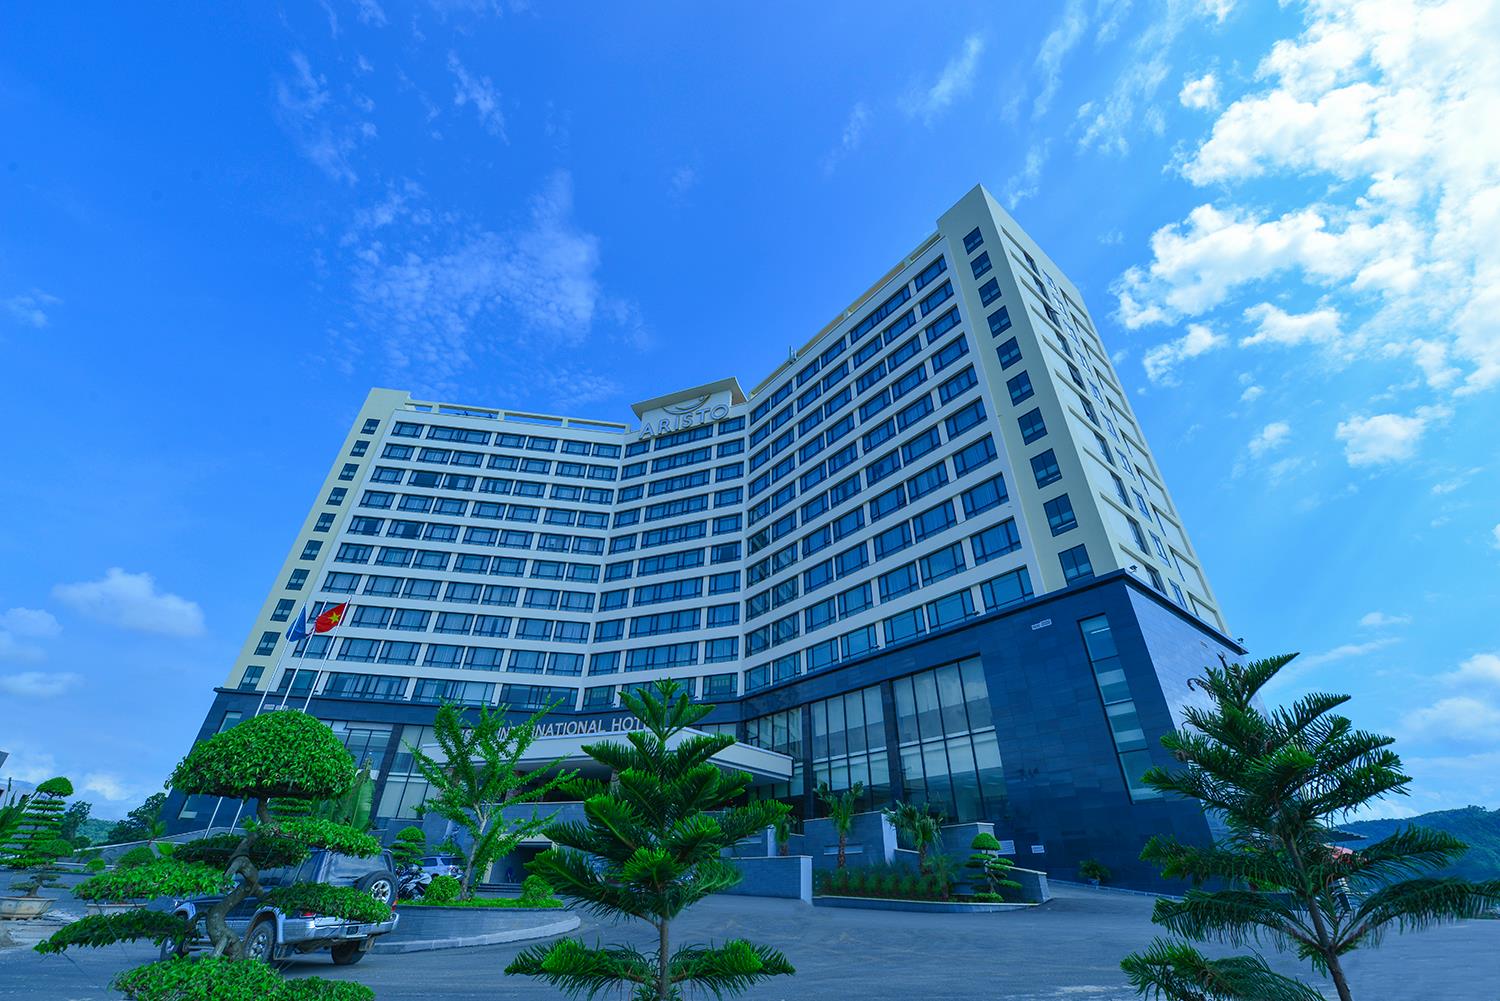 Aristo International Hotel - Khách sạn sang trọng hàng đầu tại Lào Cai